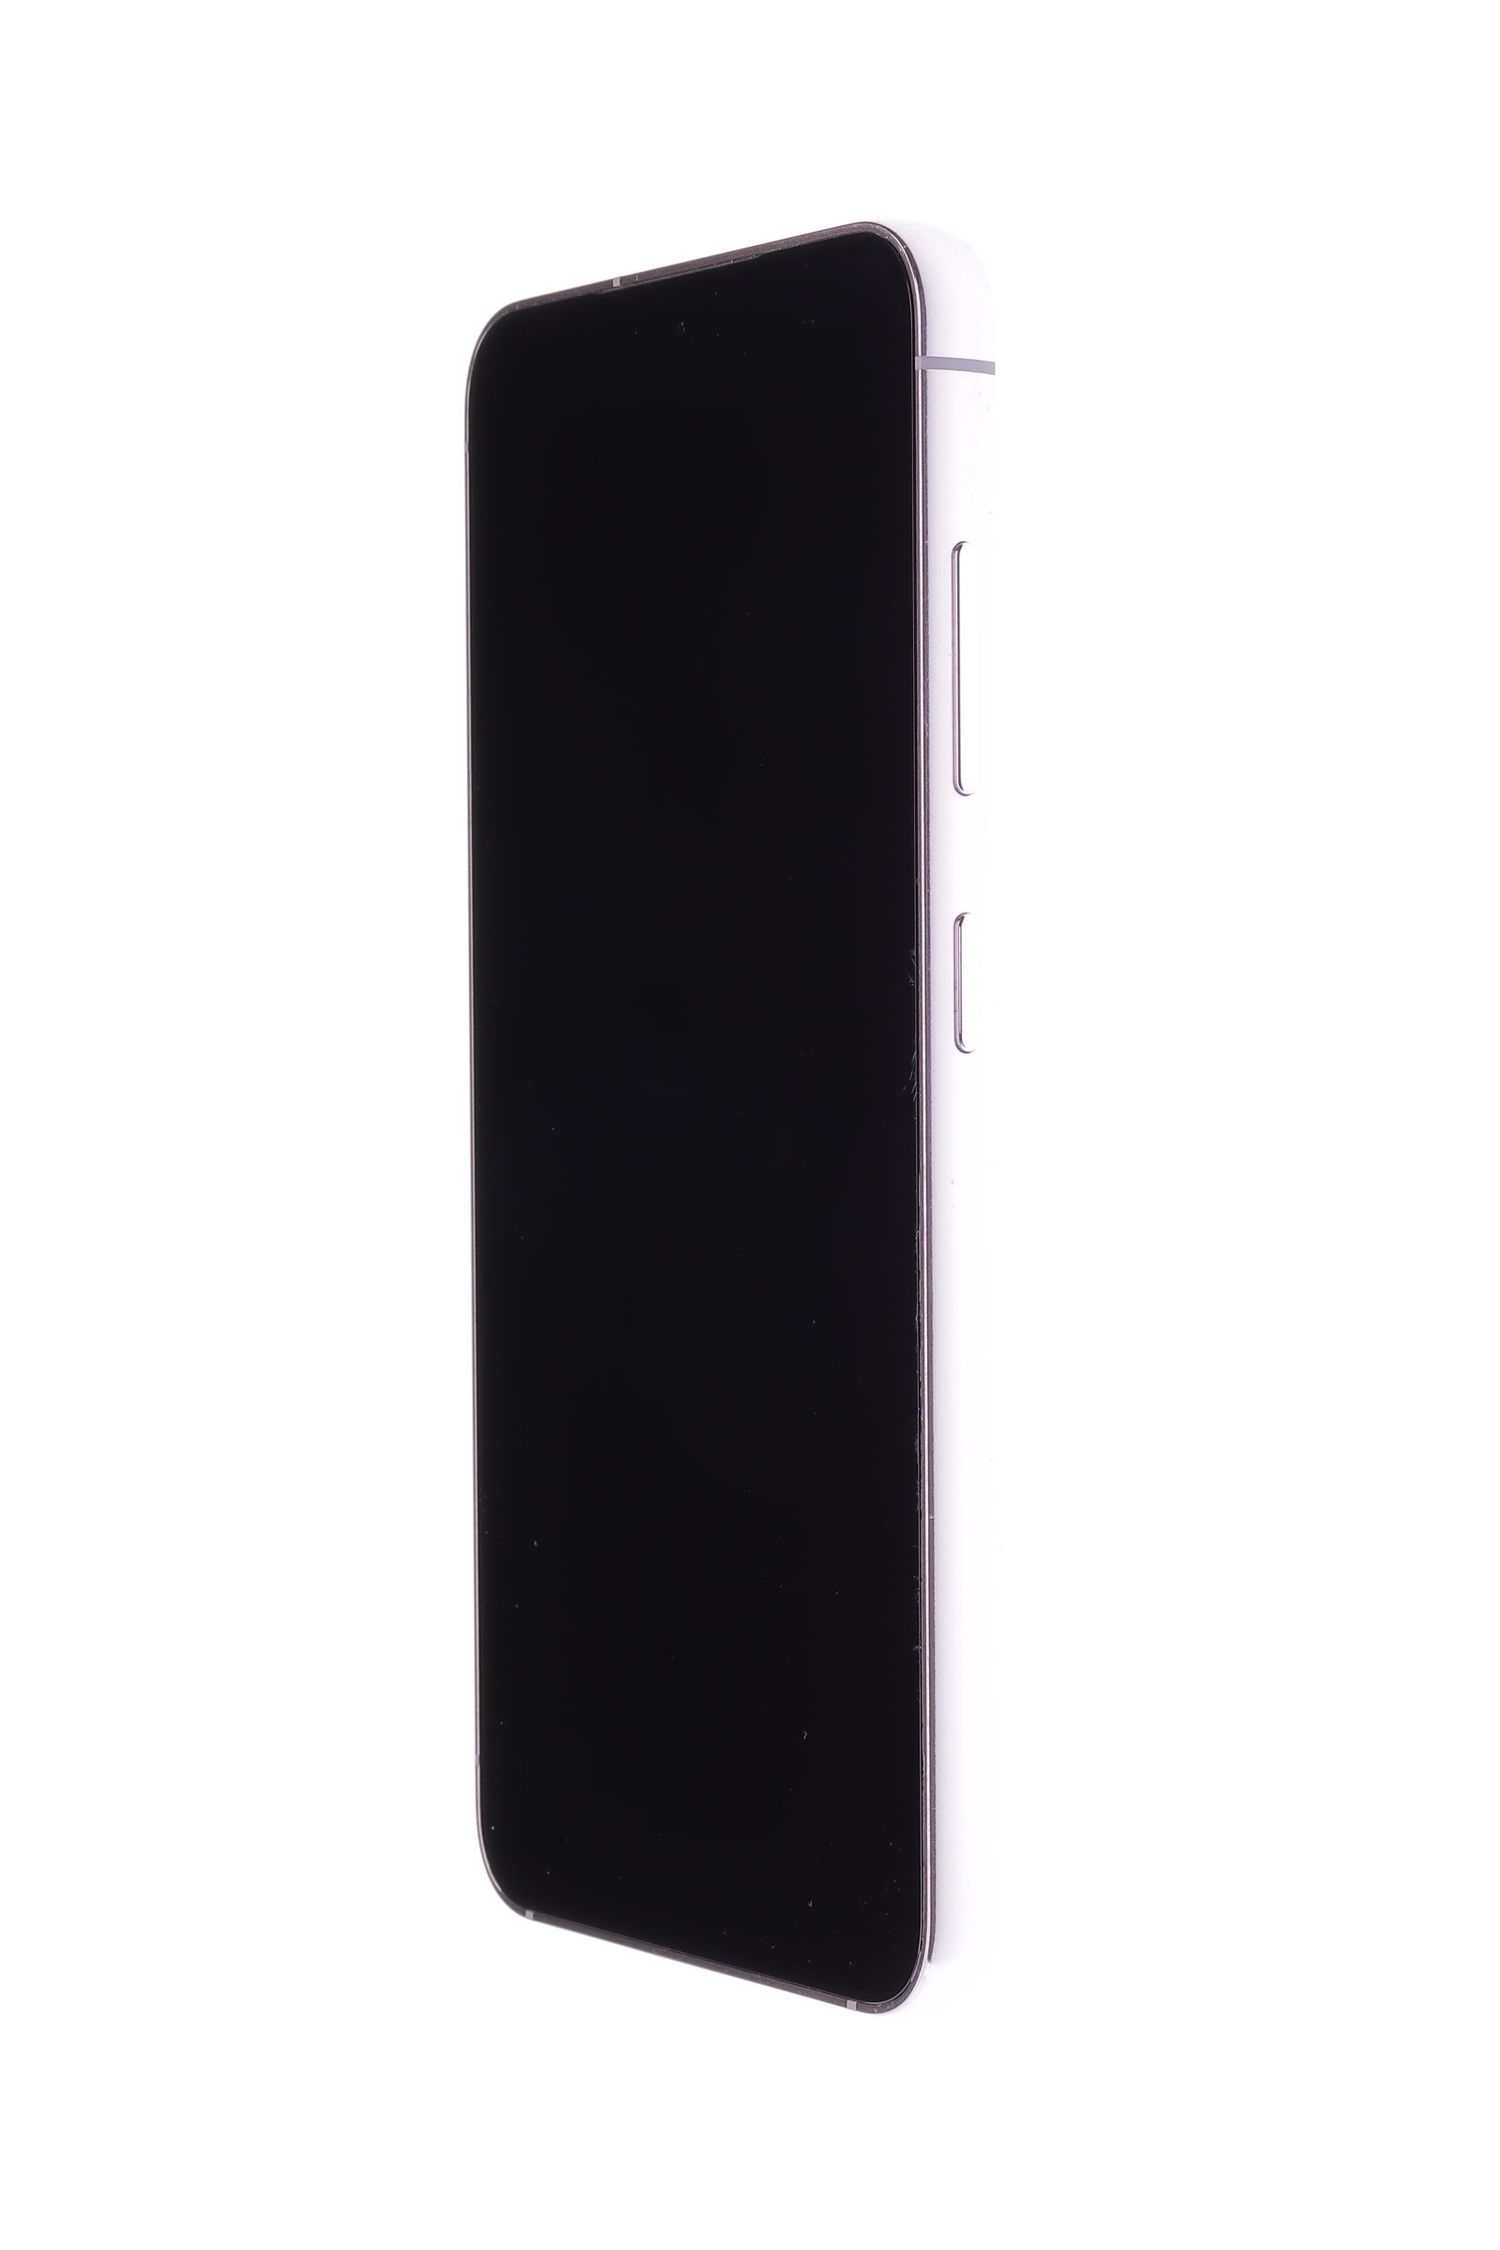 Κινητό τηλέφωνο Samsung Galaxy S23 5G Dual Sim, Lavender, 256 GB, Foarte Bun